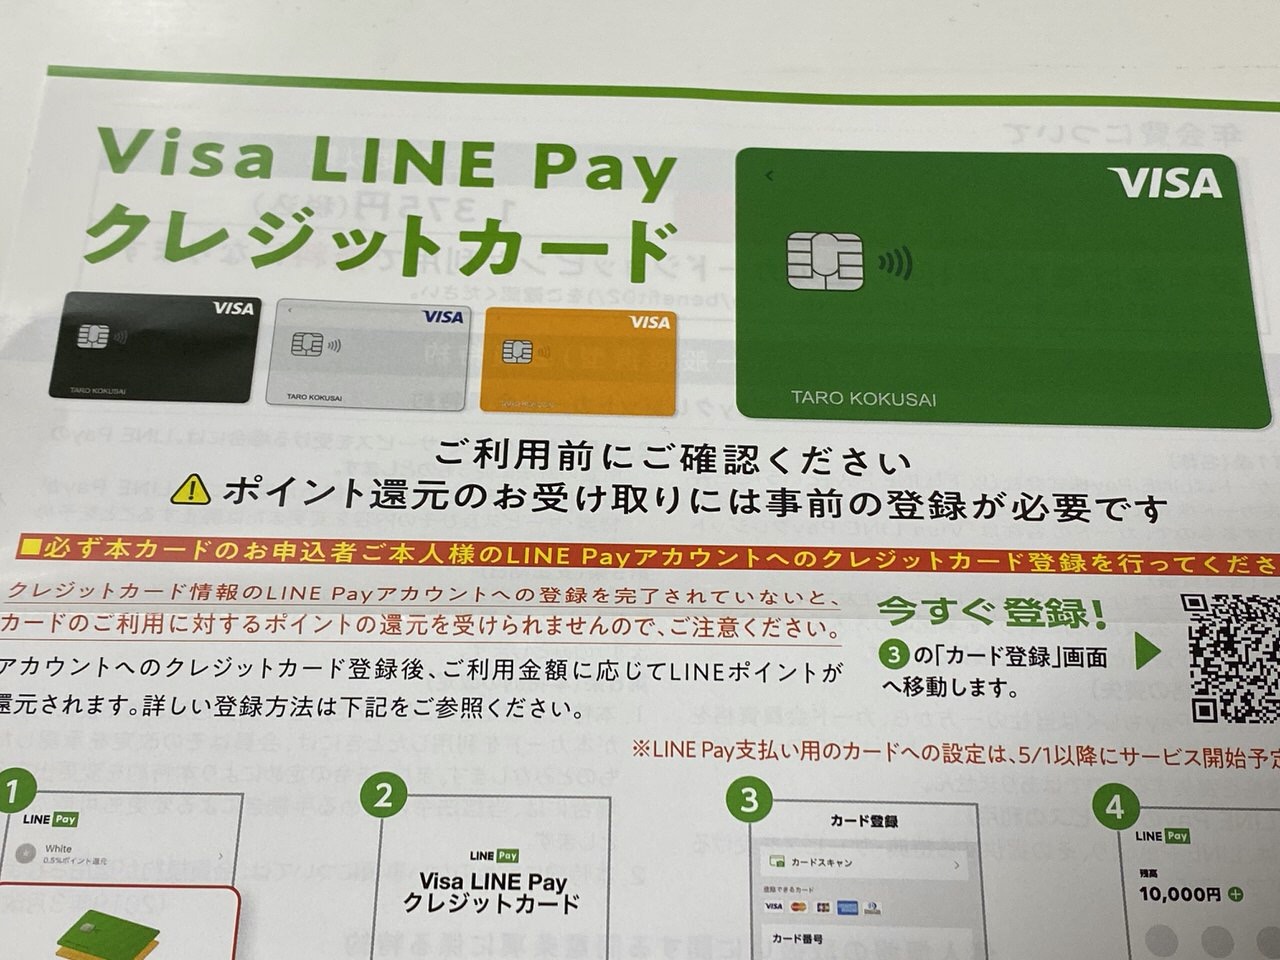 「Visa LINE Payカード」届いた→LINE PayアプリとKyashアプリに登録してみた